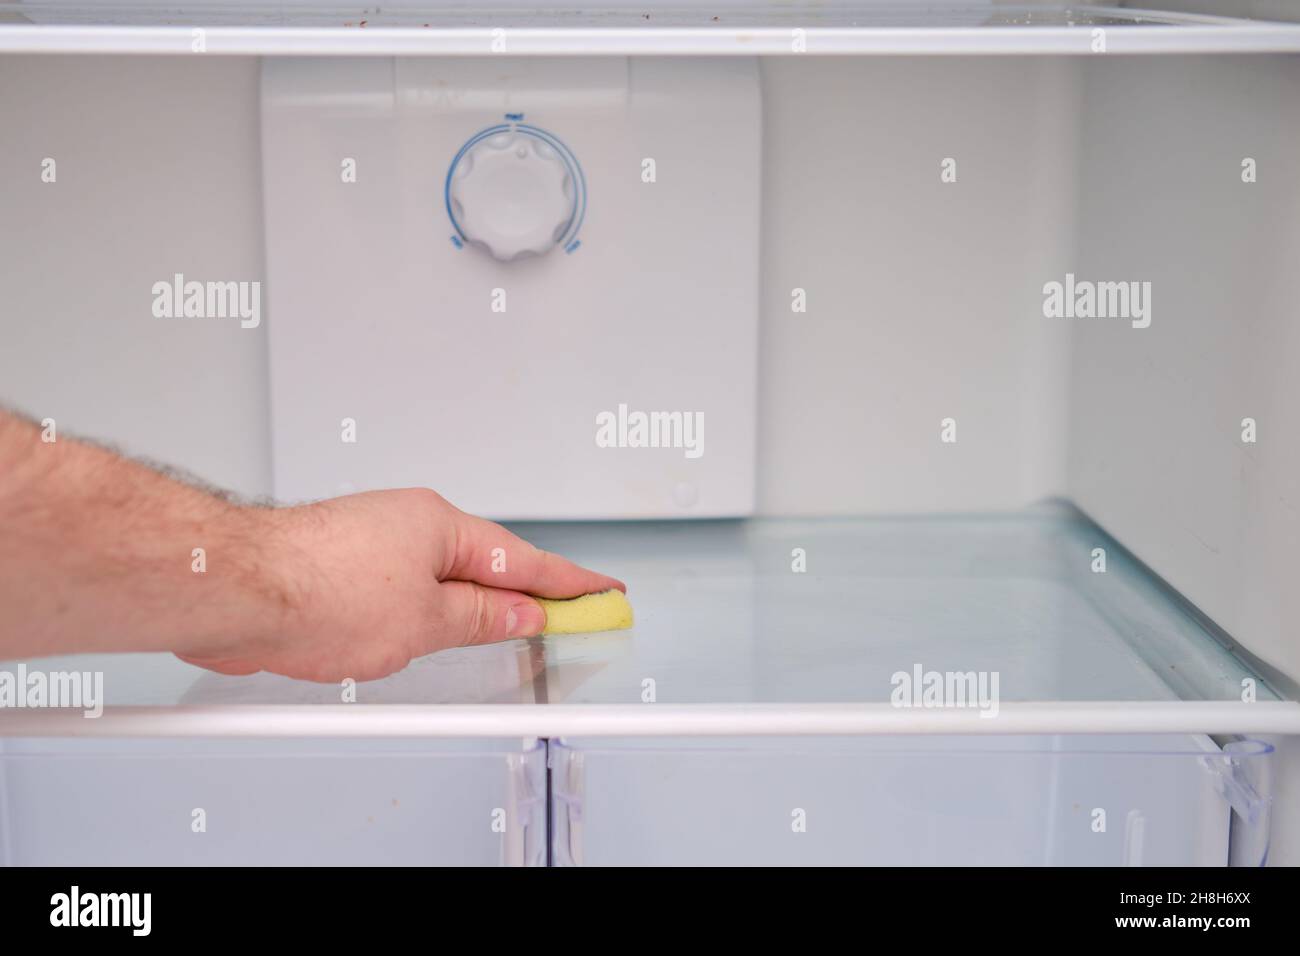 Un homme main avec une éponge jaune lave le réfrigérateur Banque D'Images